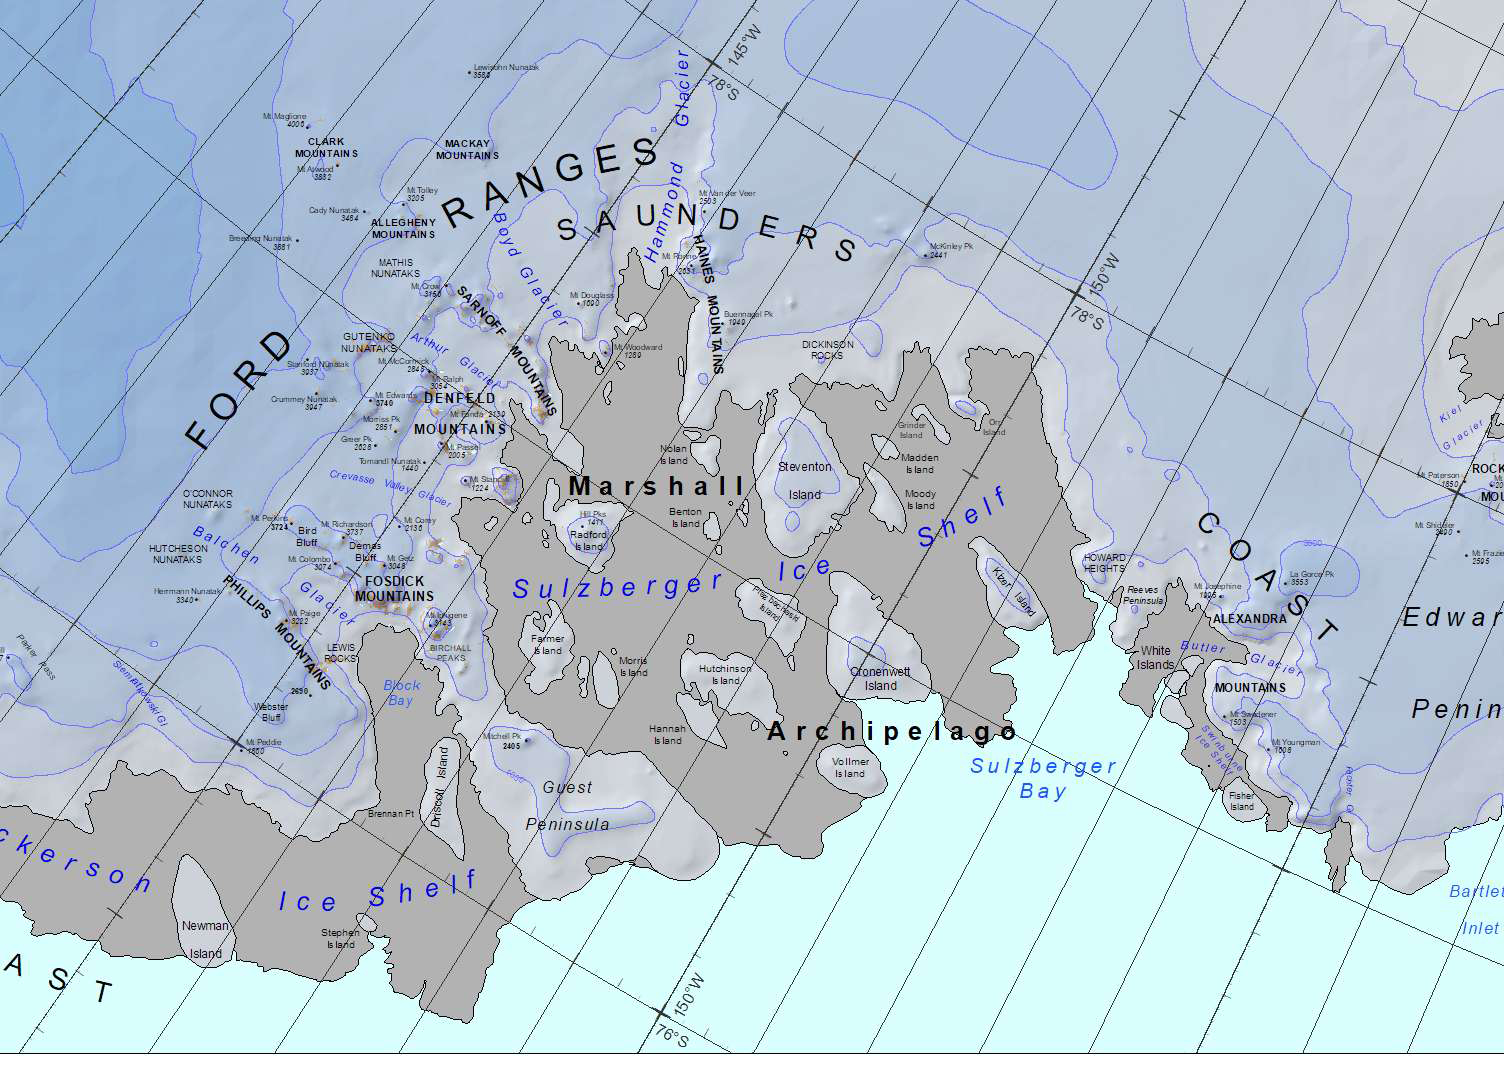 Marshall archipelago.jpg